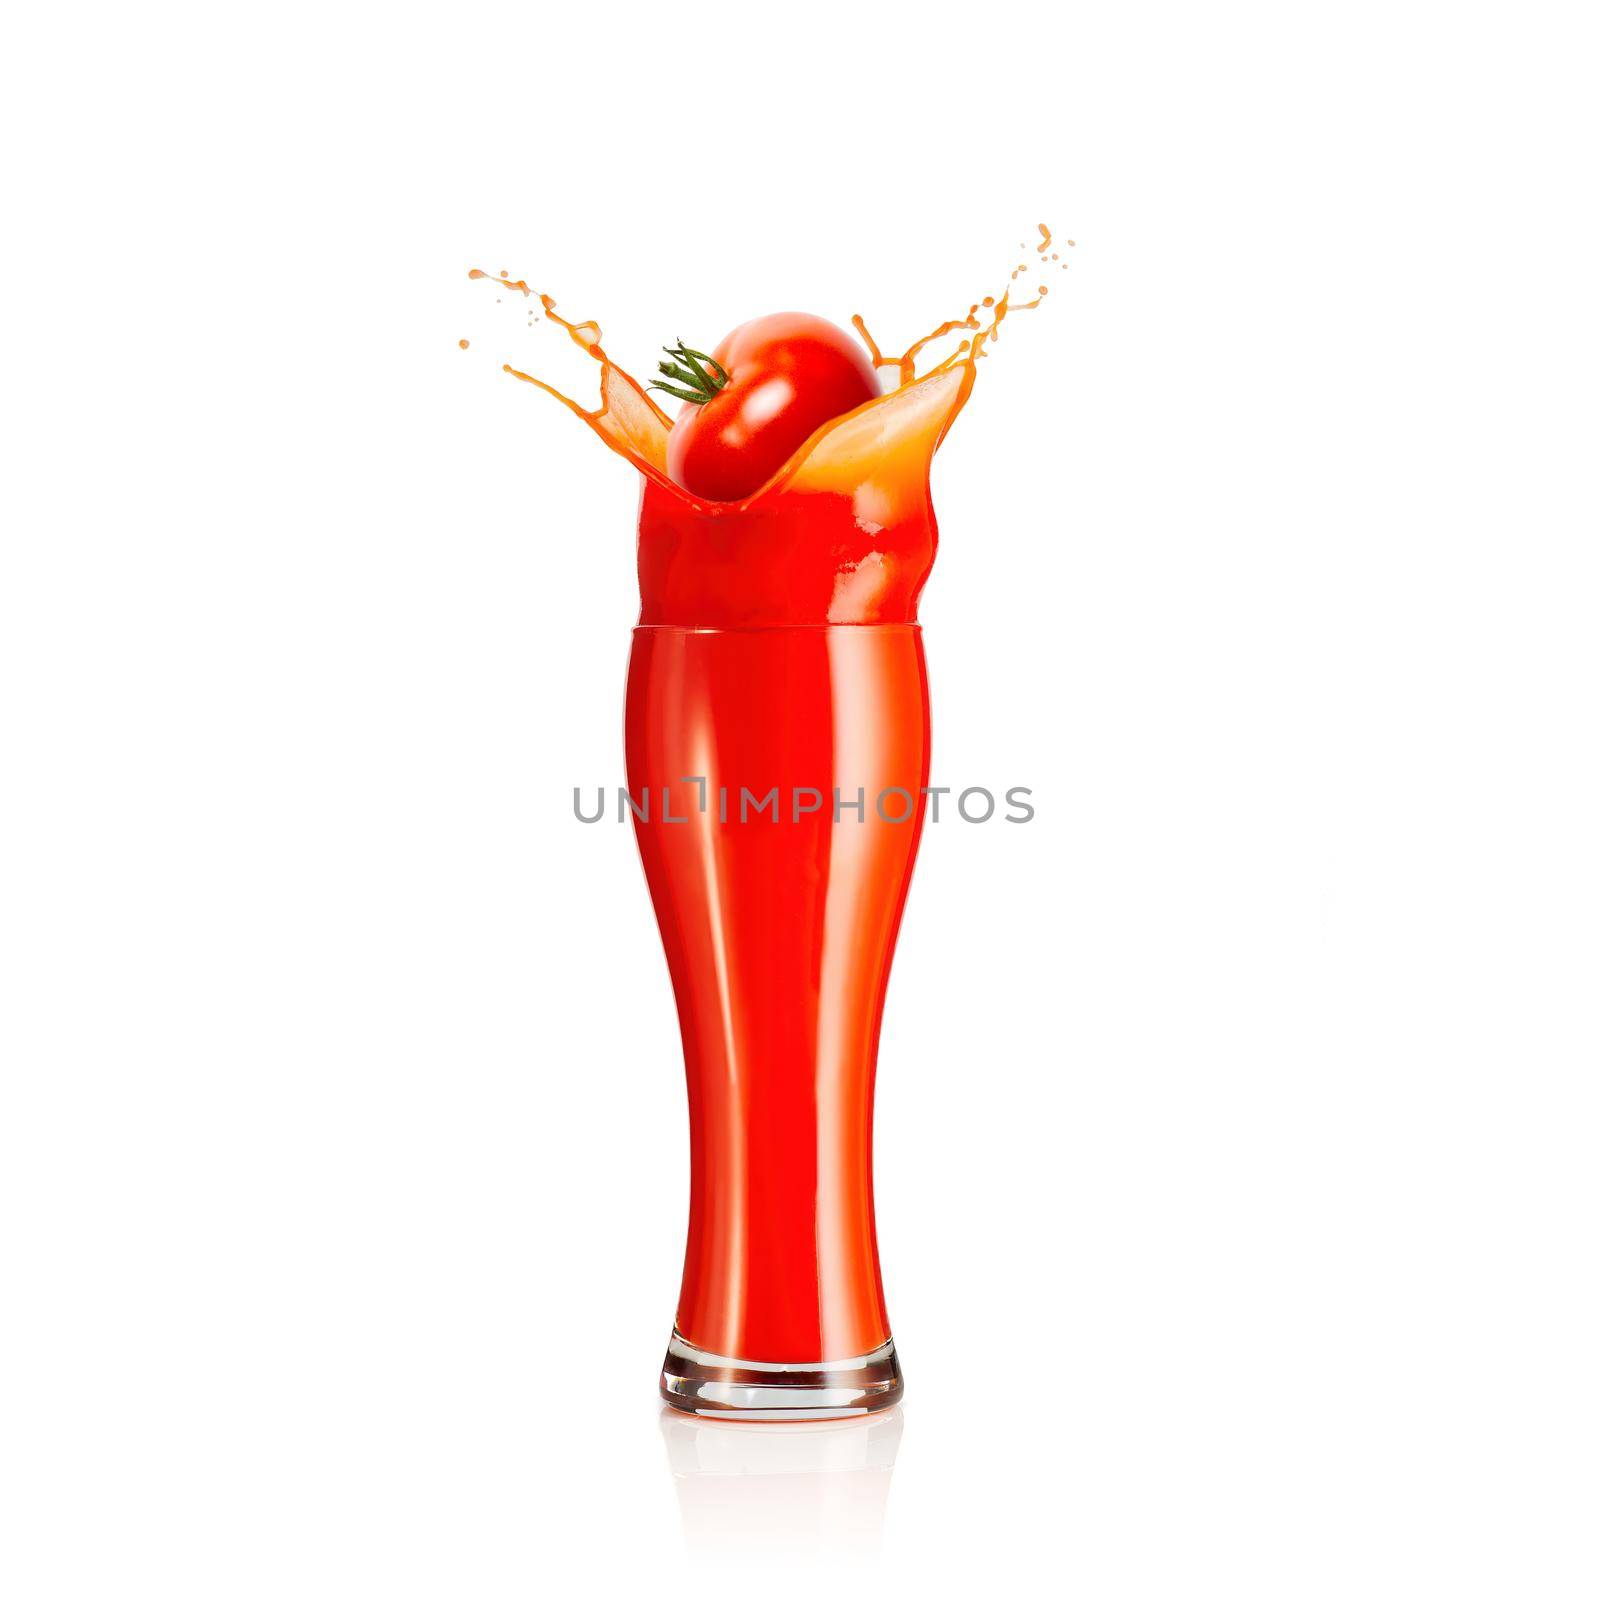 splash of tomato juice isolated on white background. juice in glass splashing by PhotoTime